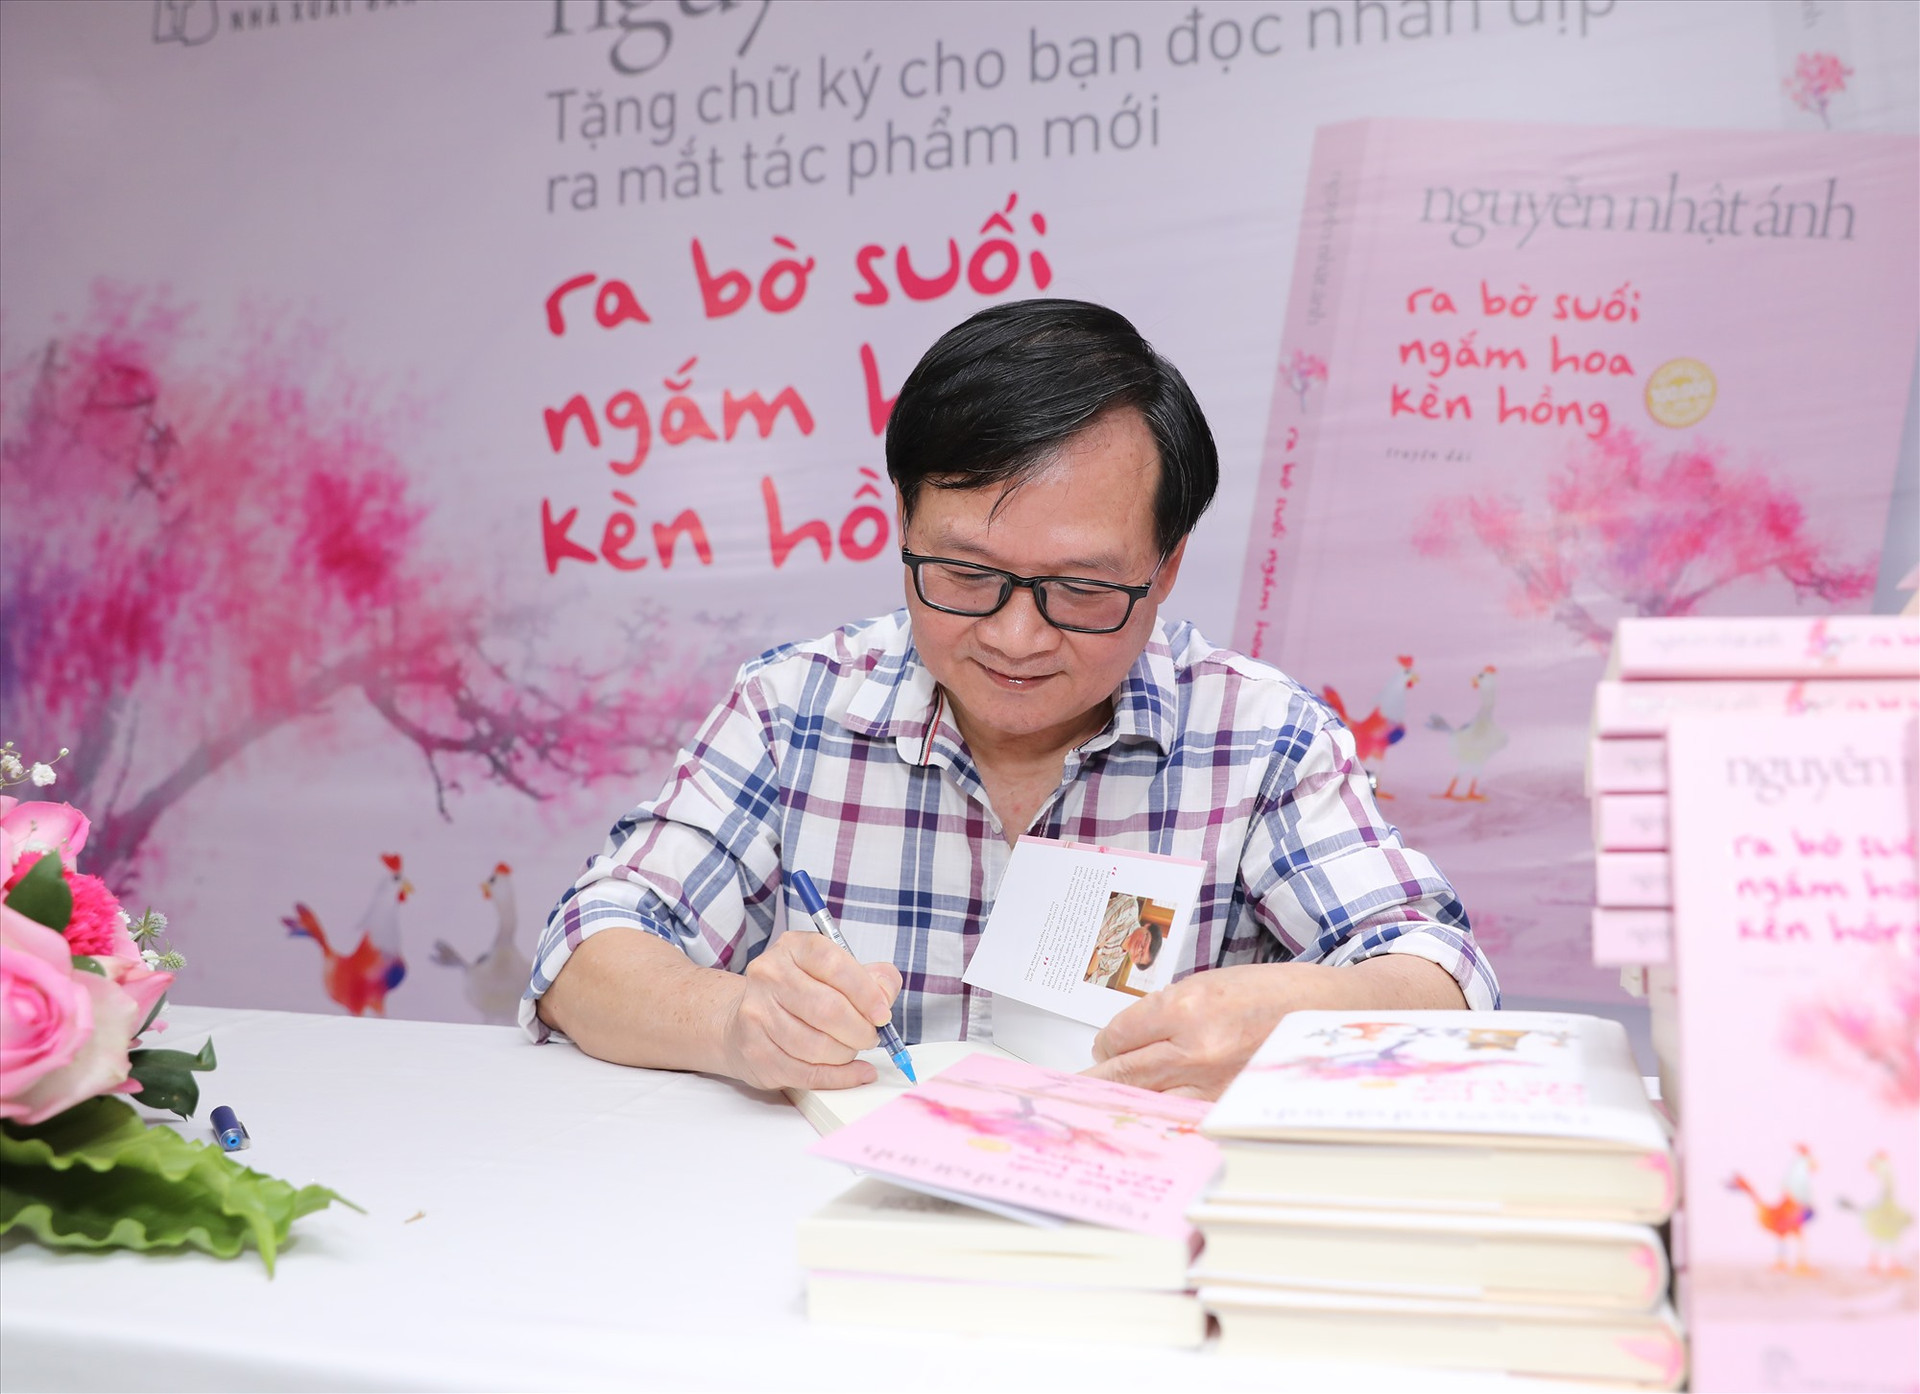 Nhà văn Nguyễn Nhật Ánh ký tặng sách “Ra bờ suối ngắm hoa kèn hồng”.